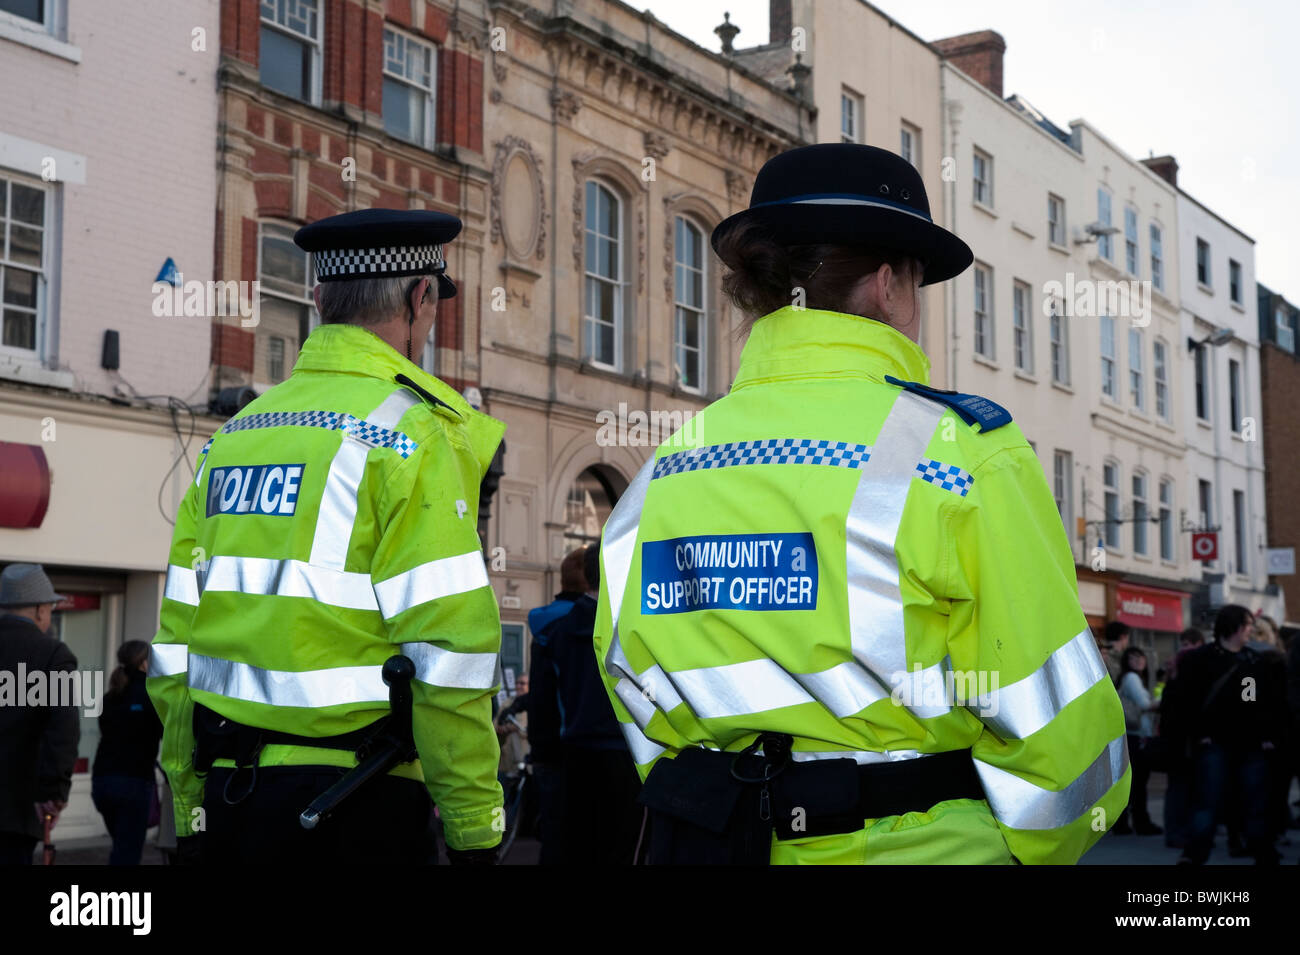 Frau Polizei Gemeinschaft unterstützen Offizier zu Fuß durch die Innenstadt von Hereford, UK. Heckansicht des weiblichen CSO mit männlichen Kollegen. Stockfoto